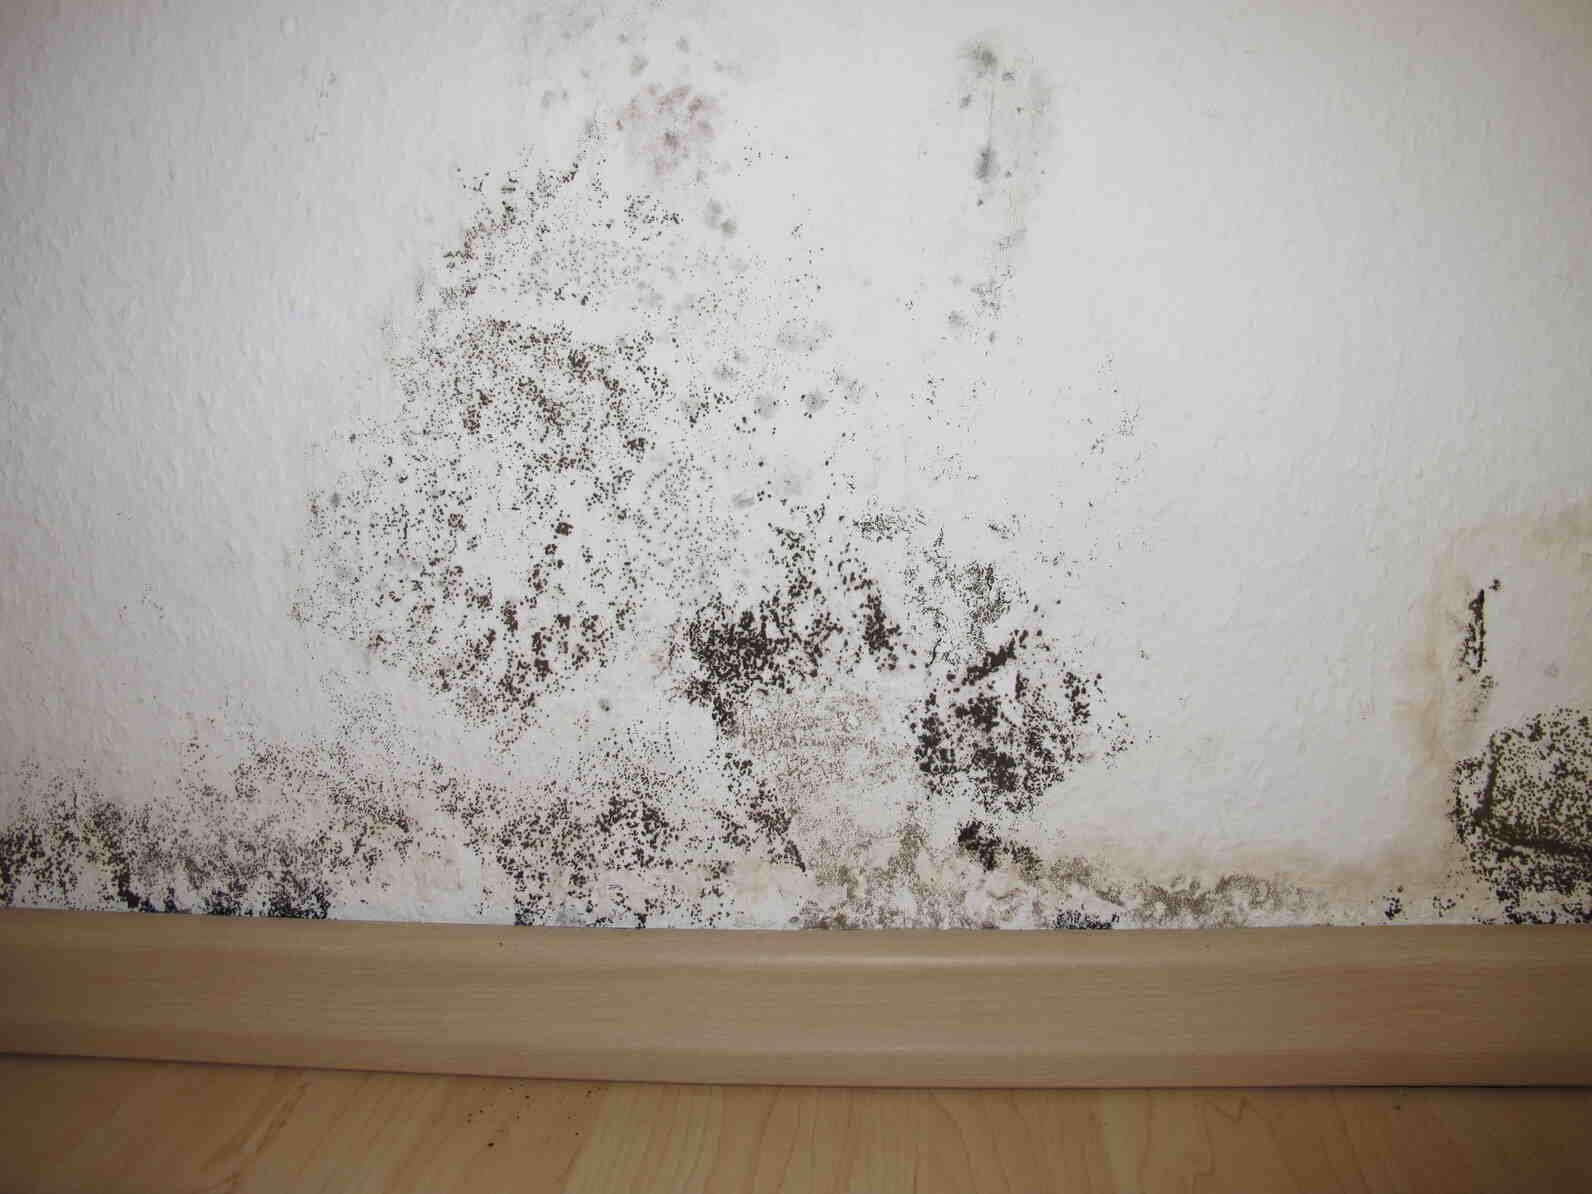 Comment enlever la moisissure des murs?